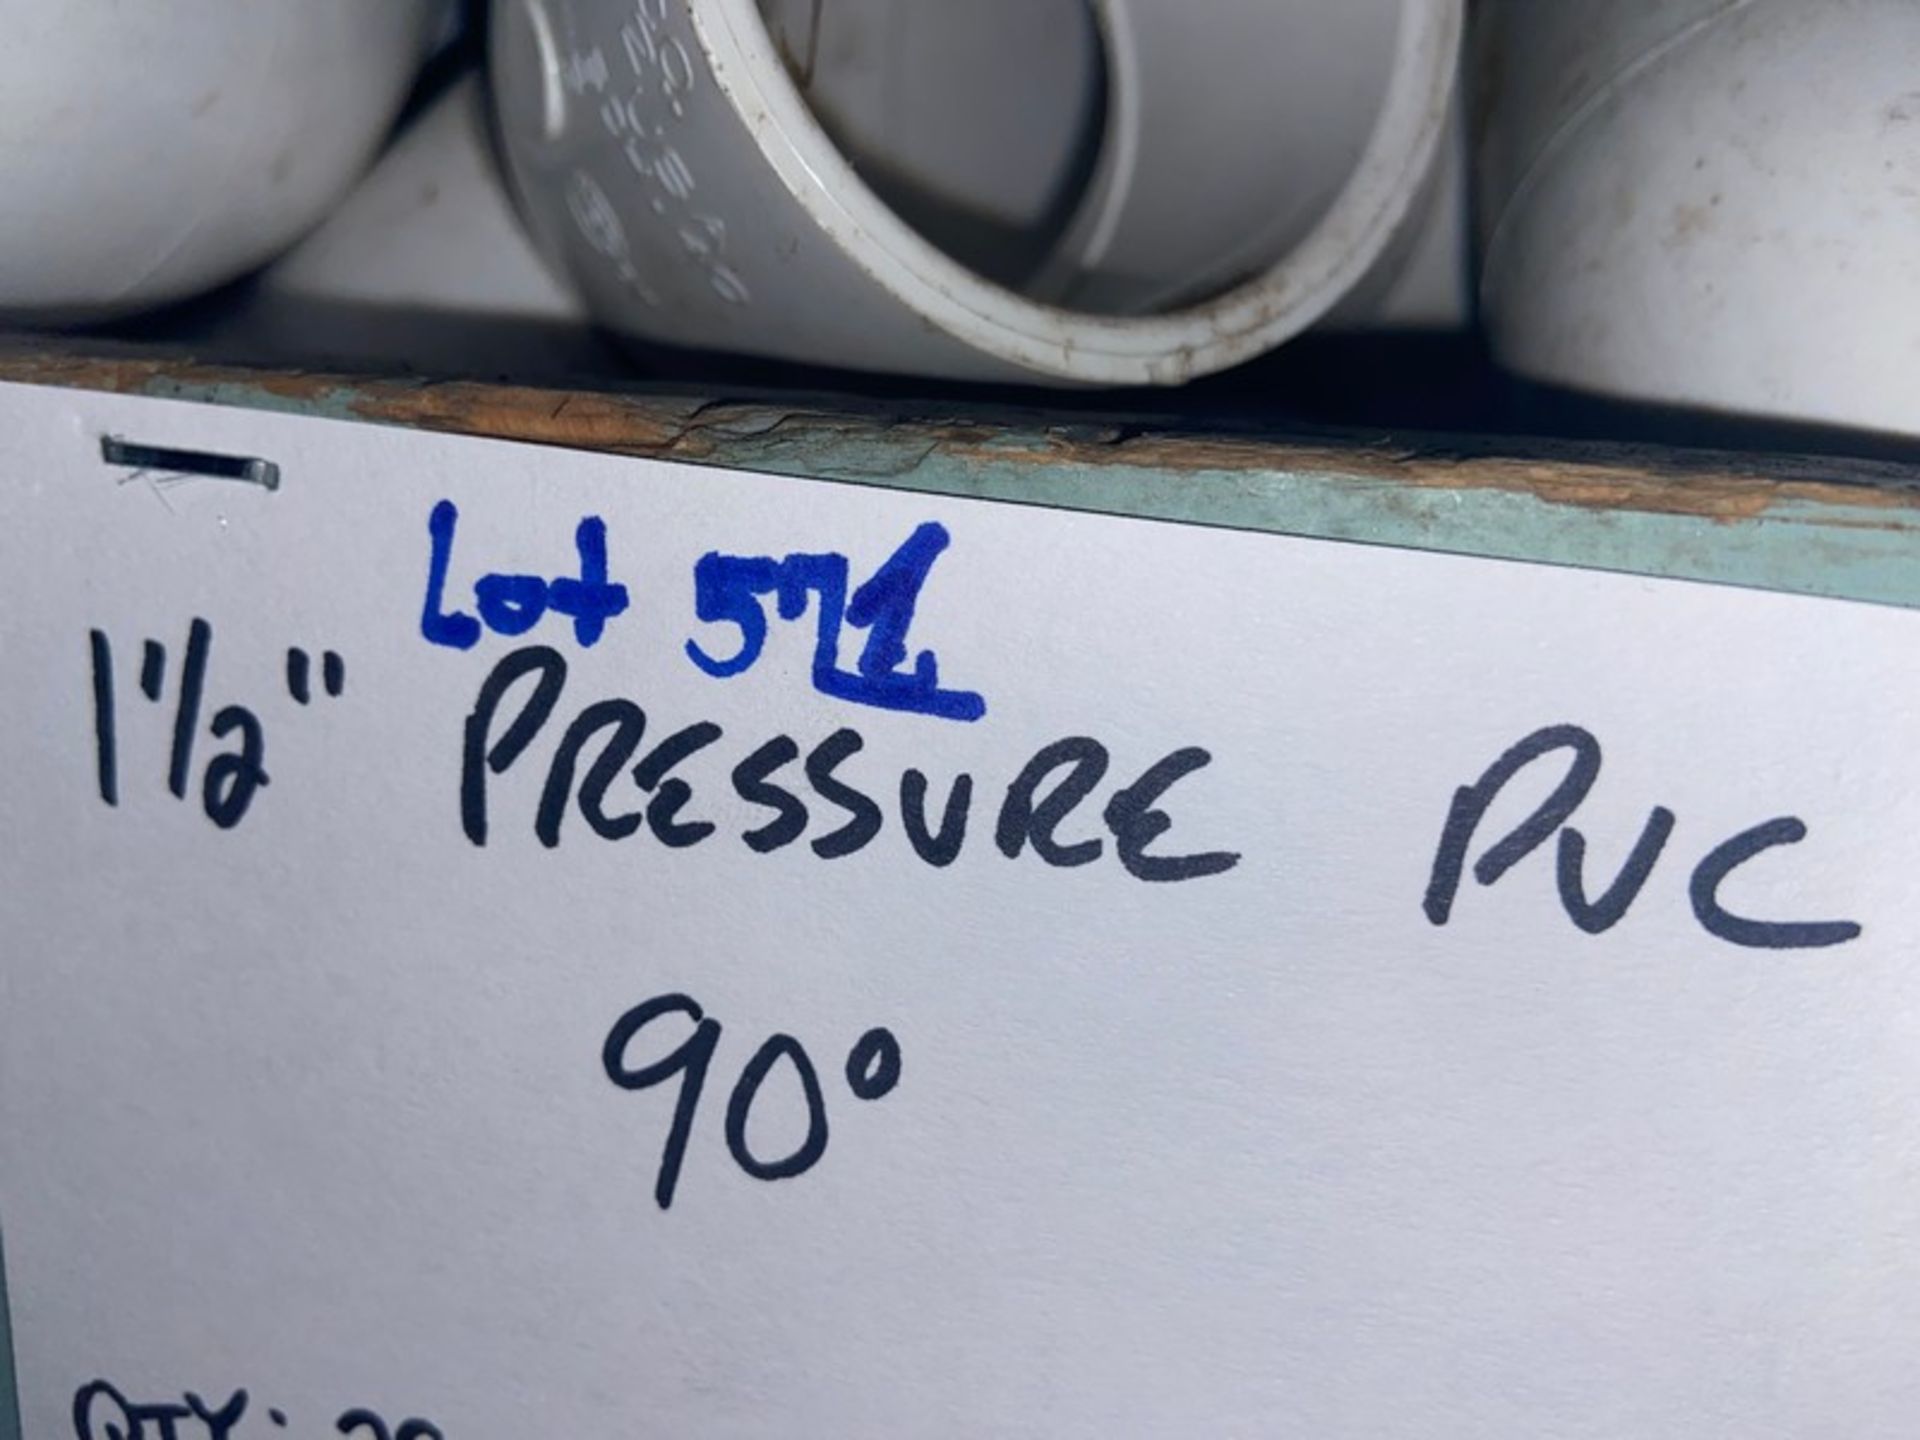 (17) 1-1/2" Pressure PVC Street 90' (Bin: H5); (29) 1-1/2" Pressure PVC 90' (Bin: H5) (LOCATED IN - Image 5 of 9